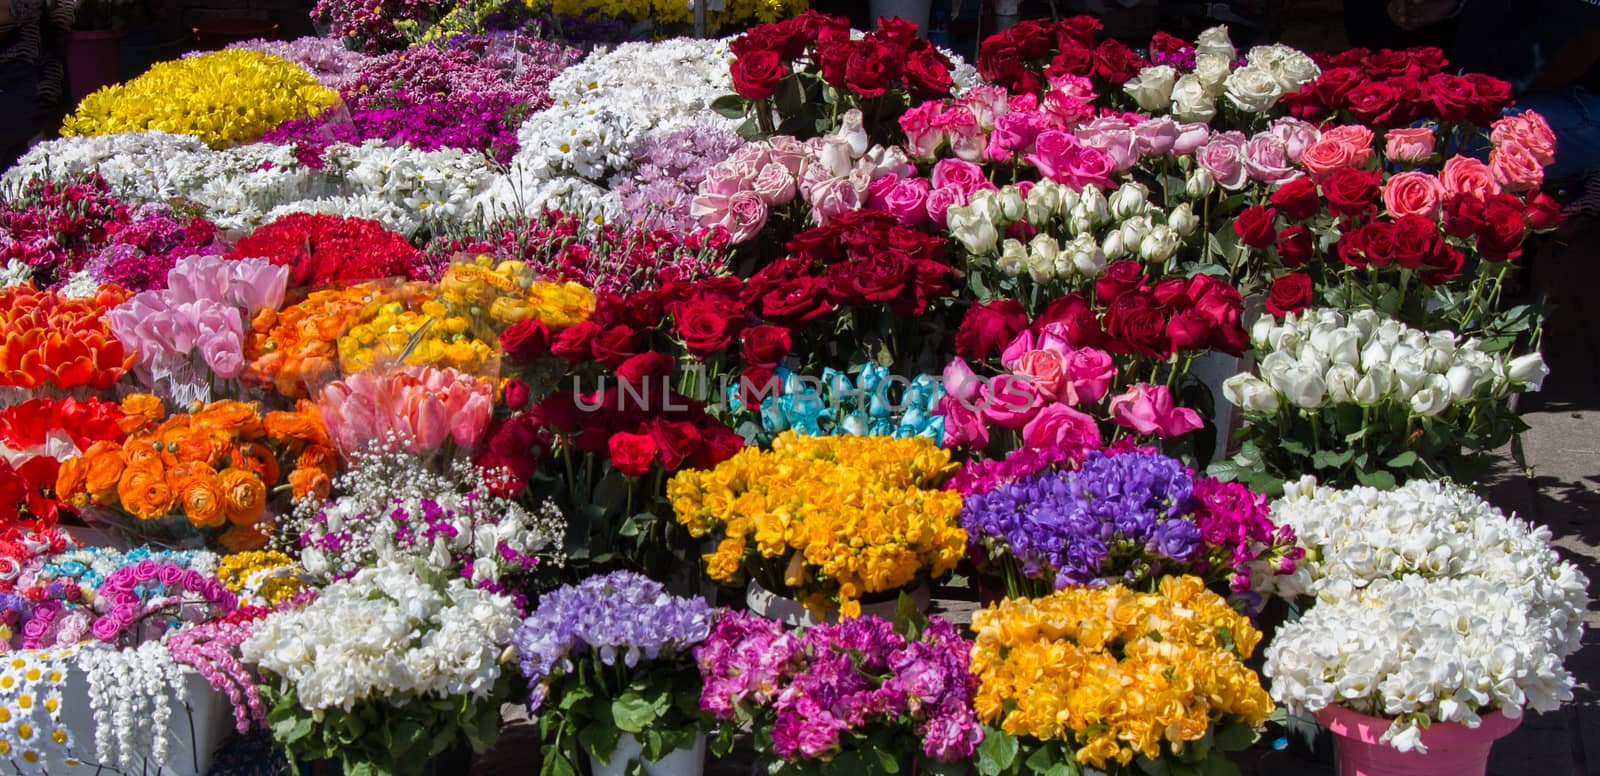 Fresh colorful Flowers put in vases by berkay